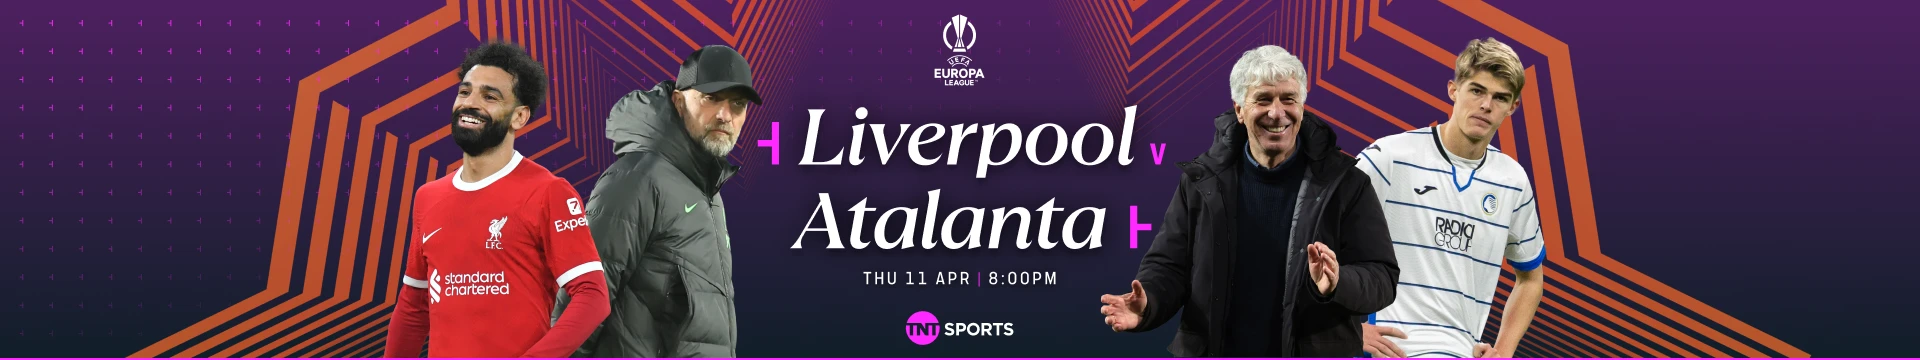 Liverpool v Atalanta Thursday 11 April at 8pm